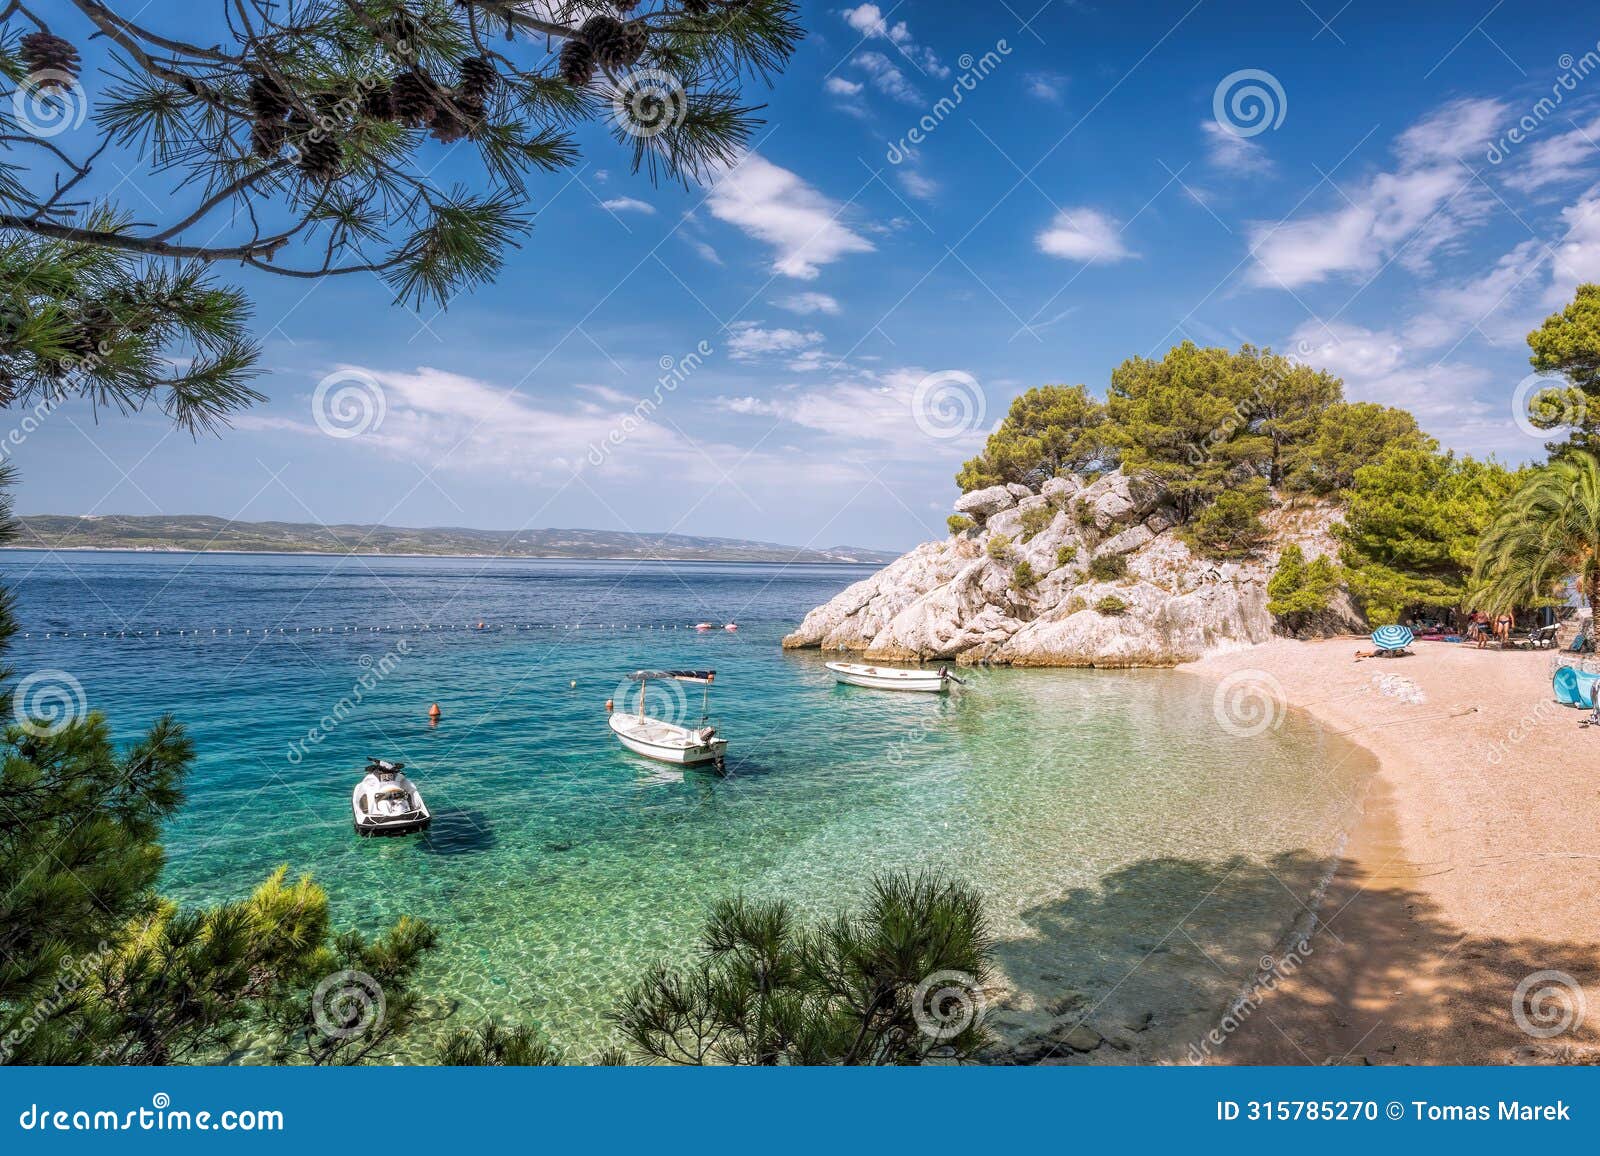 amazing punta rata beach with boats against azure sea in brela, makarska, dalmatia, croatian azure coast